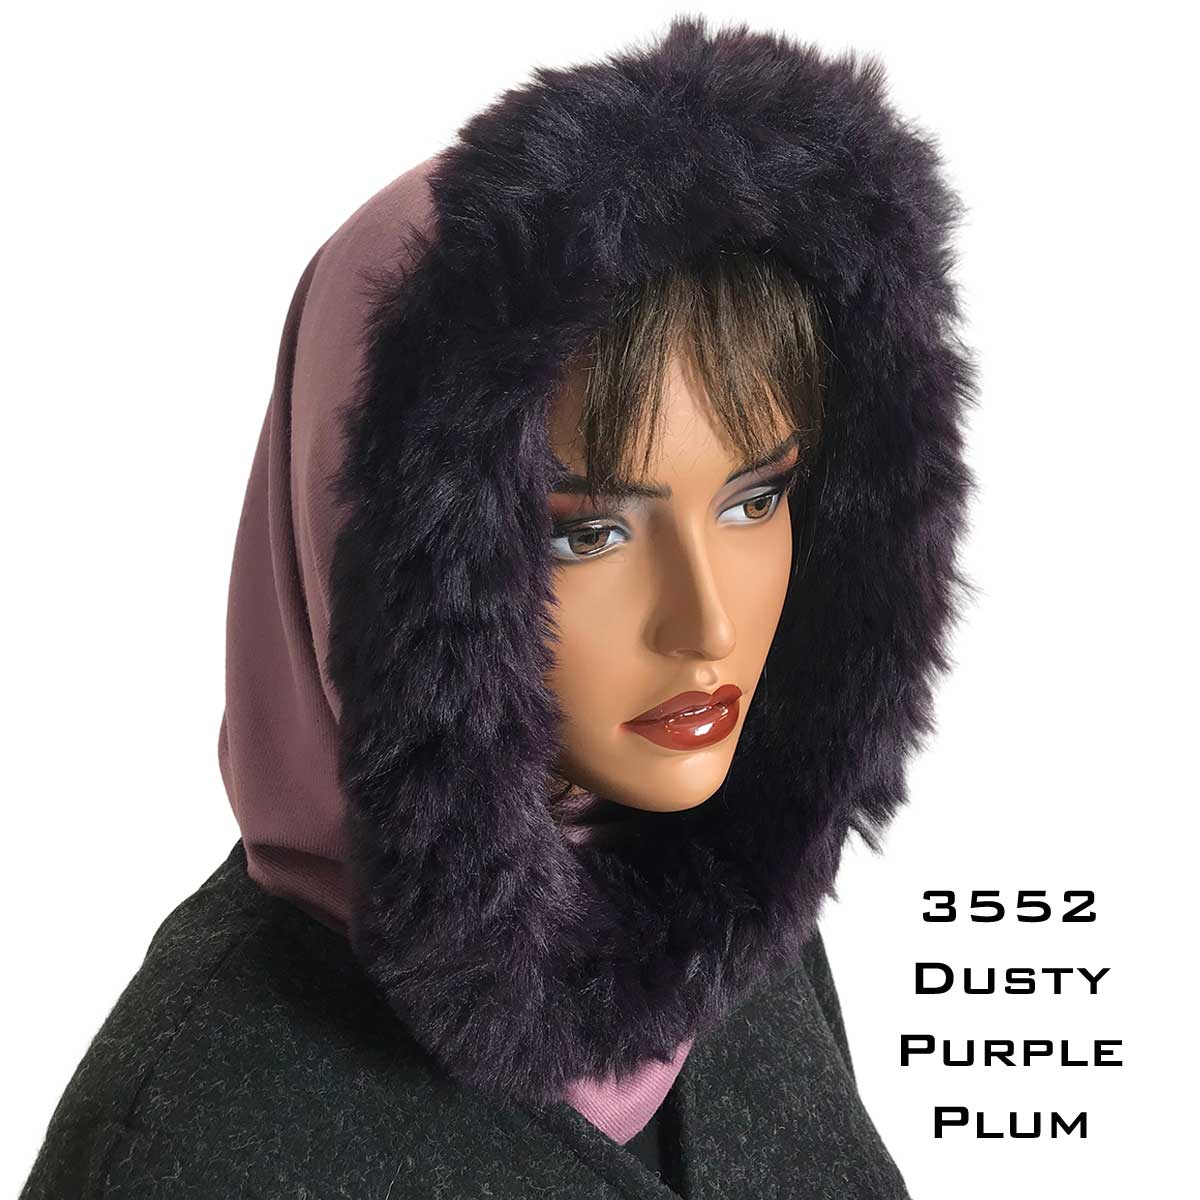 3552 - Fur Trimmed Infinity Hood 